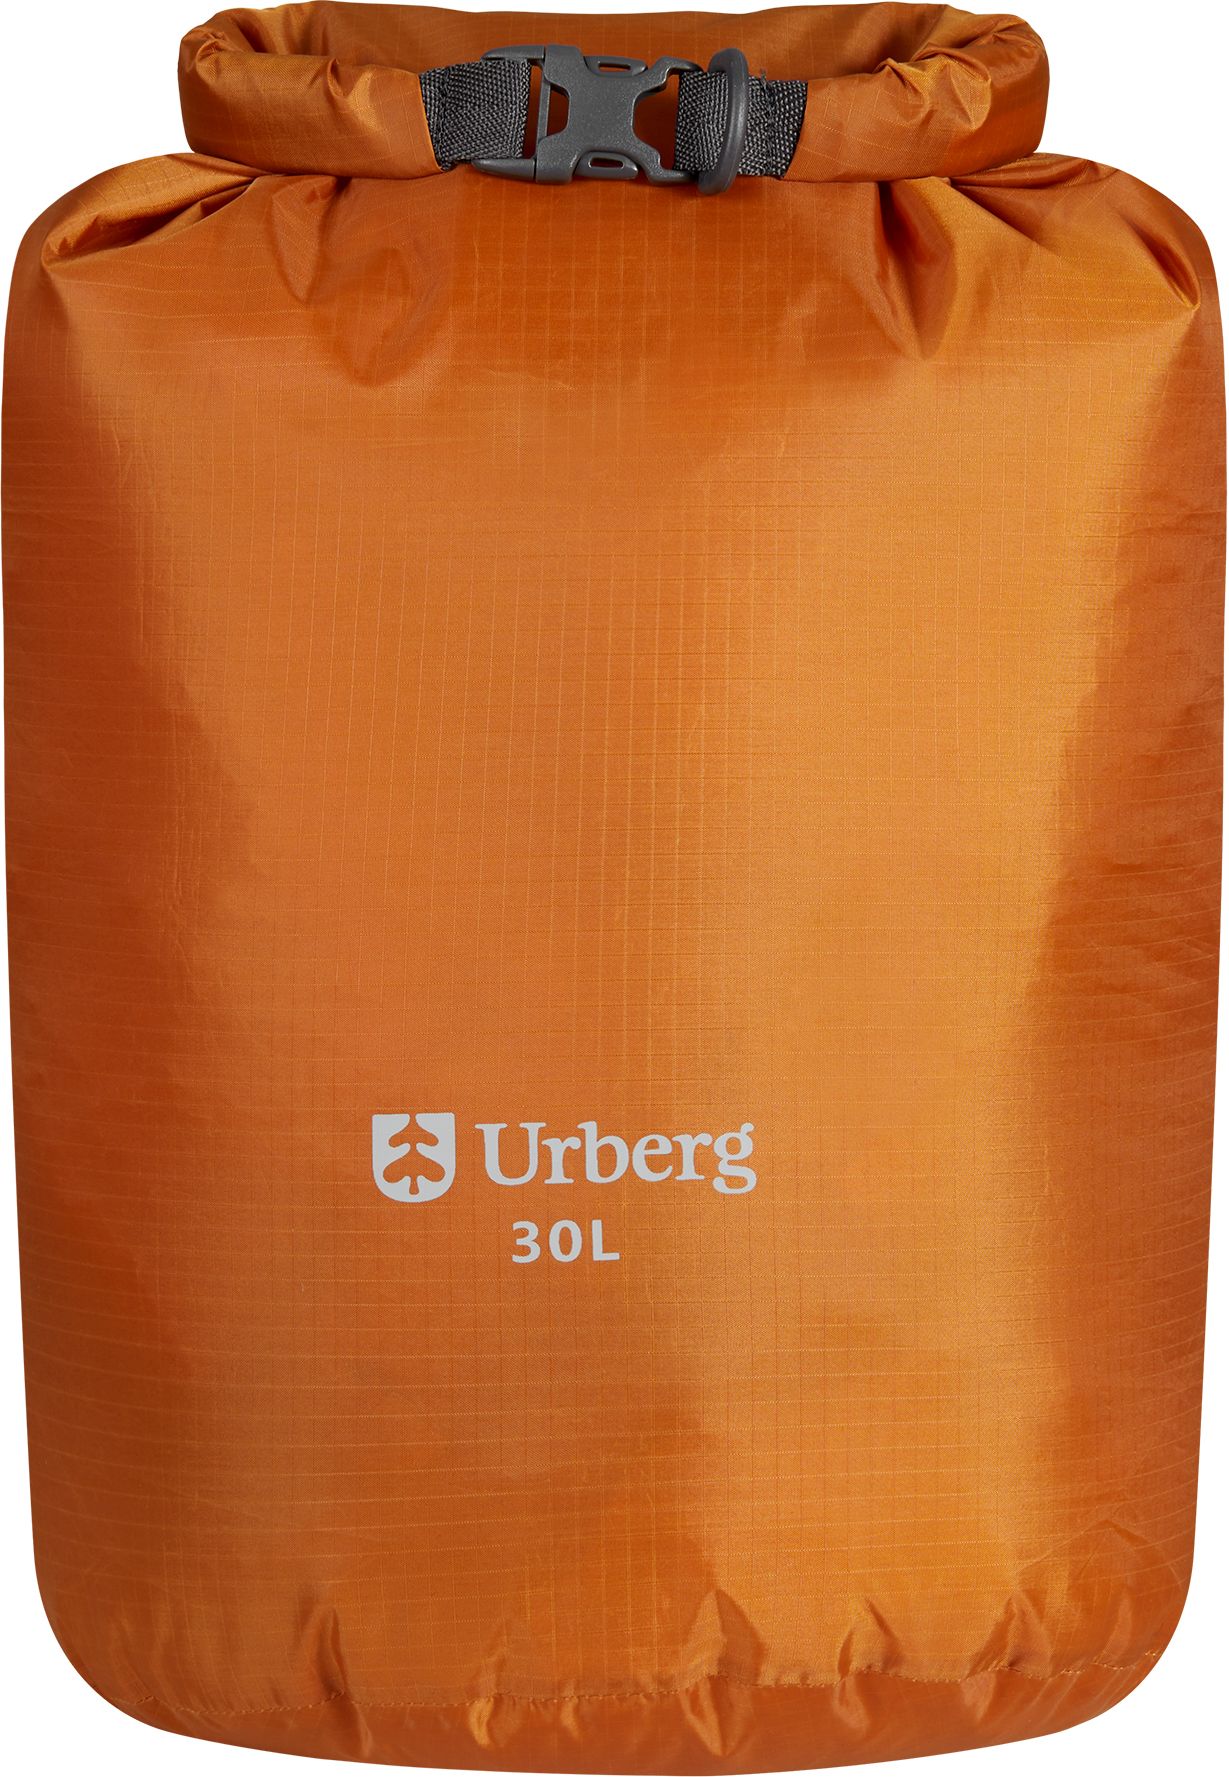 Urberg Dry Bag 30 L Pumpkin Spice